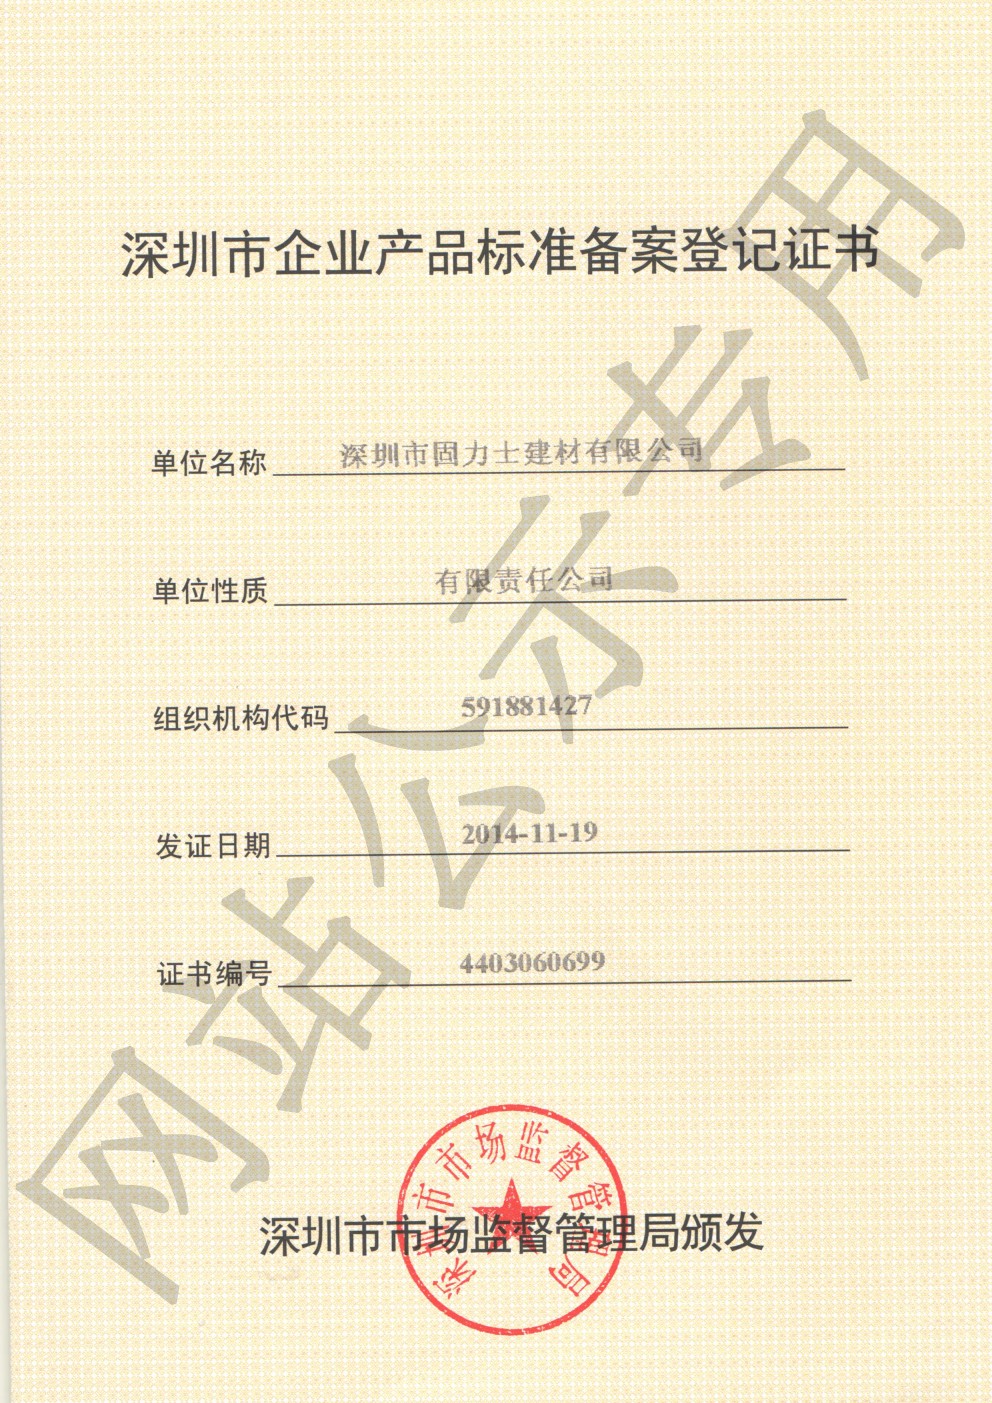 保亭企业产品标准登记证书